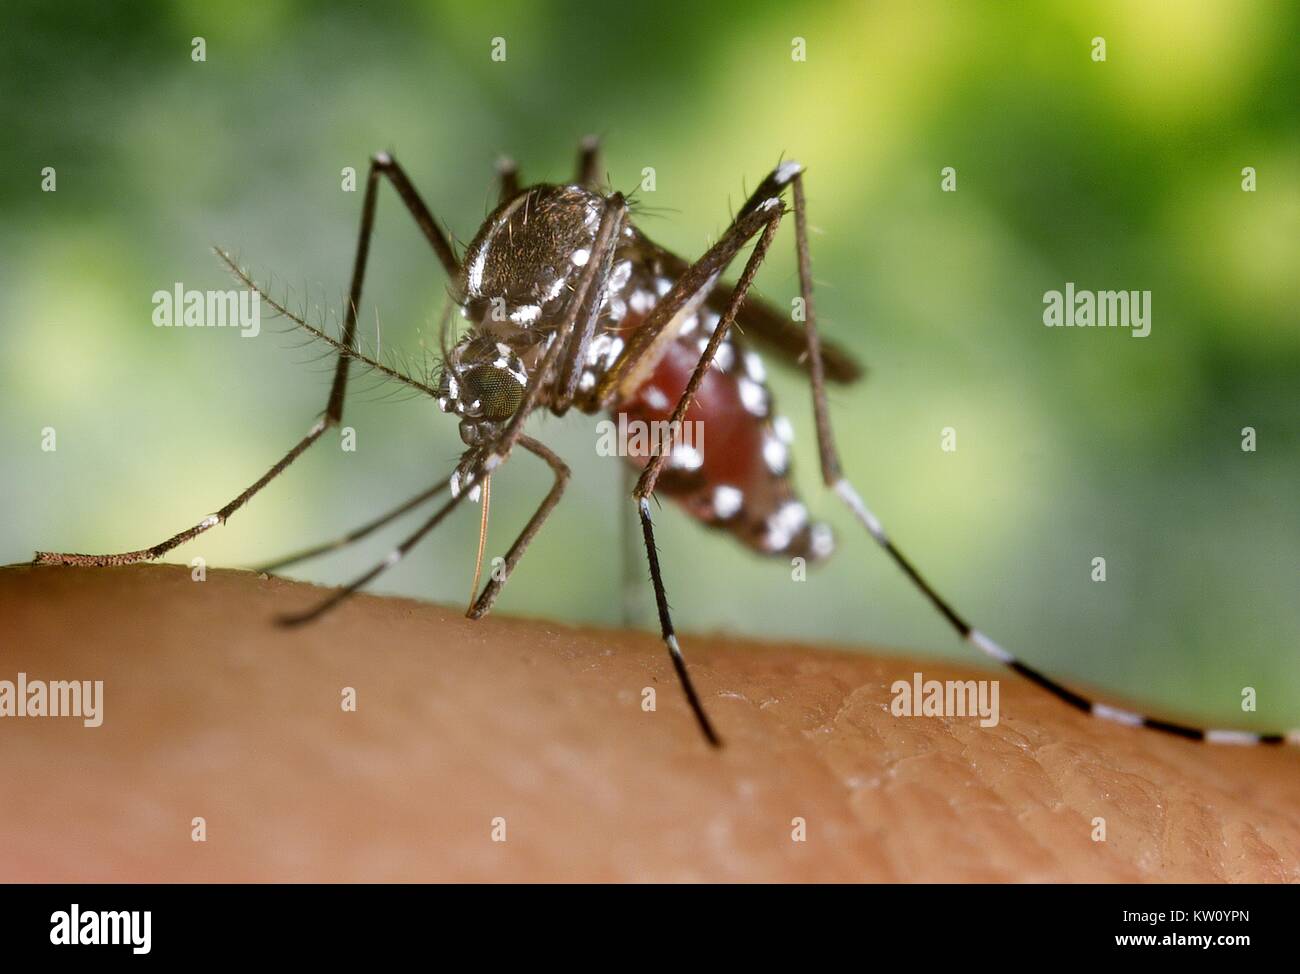 Un sangue-congestioni femmine Aedes albopictus mosquito alimentazione su un ospite umano. Al di sotto di successo della trasmissione sperimentale, Aedes albopictus è stata trovata essere un vettore del virus del Nilo occidentale. Aedes è un genere della famiglia Culicine di zanzare. Immagine cortesia CDC/James Gathany, 2002. Foto Stock